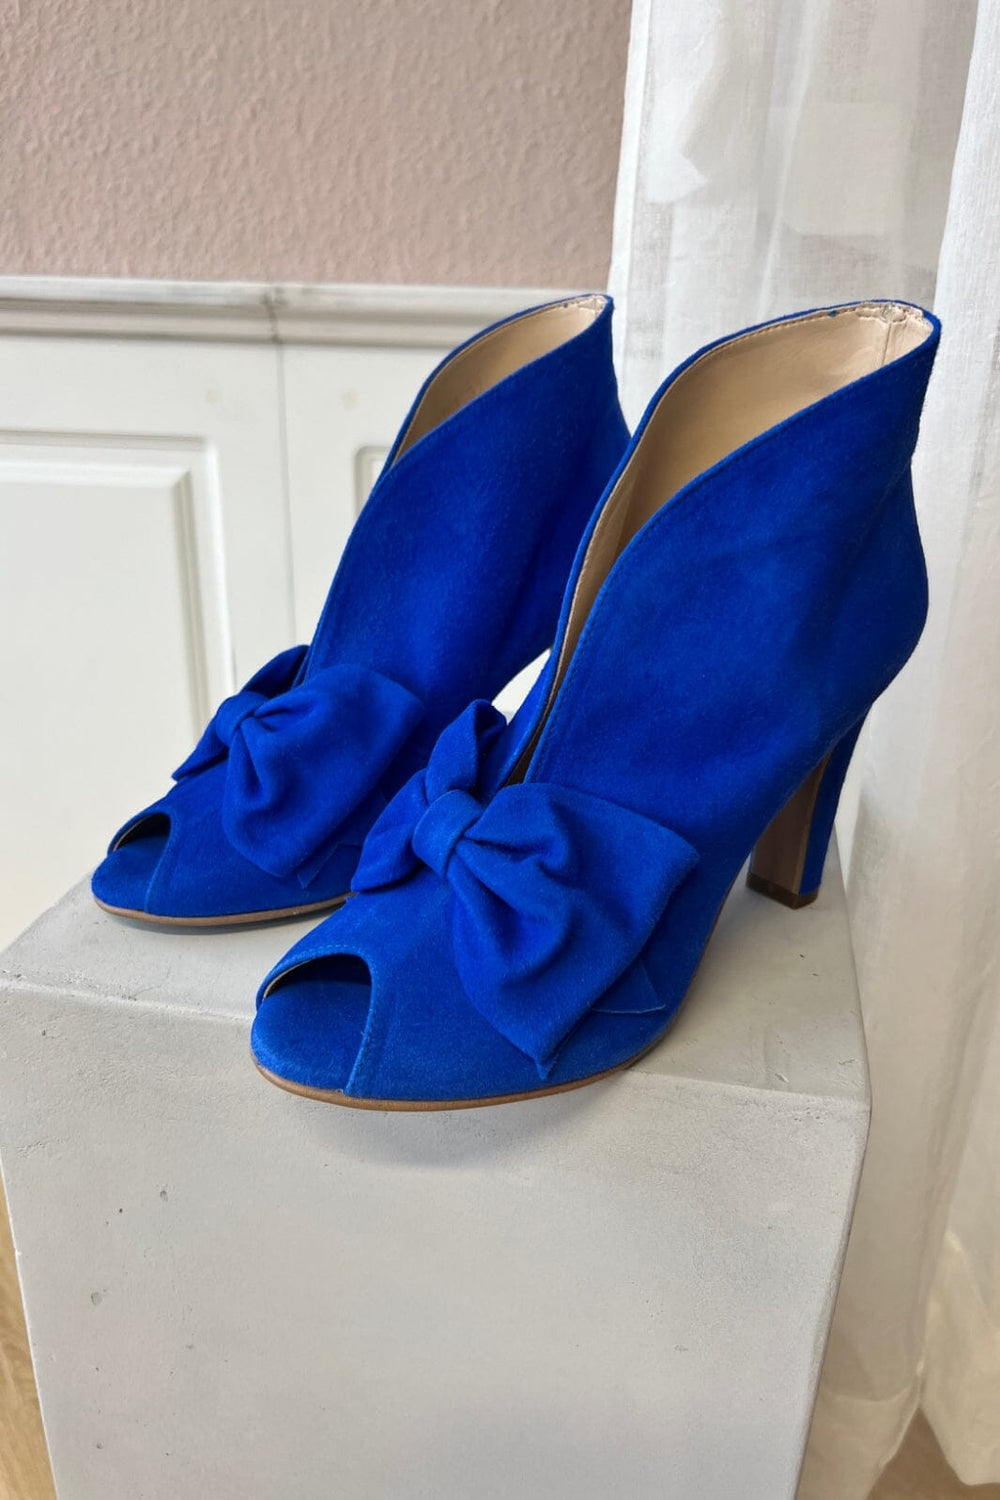 Copenhagen Shoes - Passion And More - 1202 Electric Blue Stiletter 